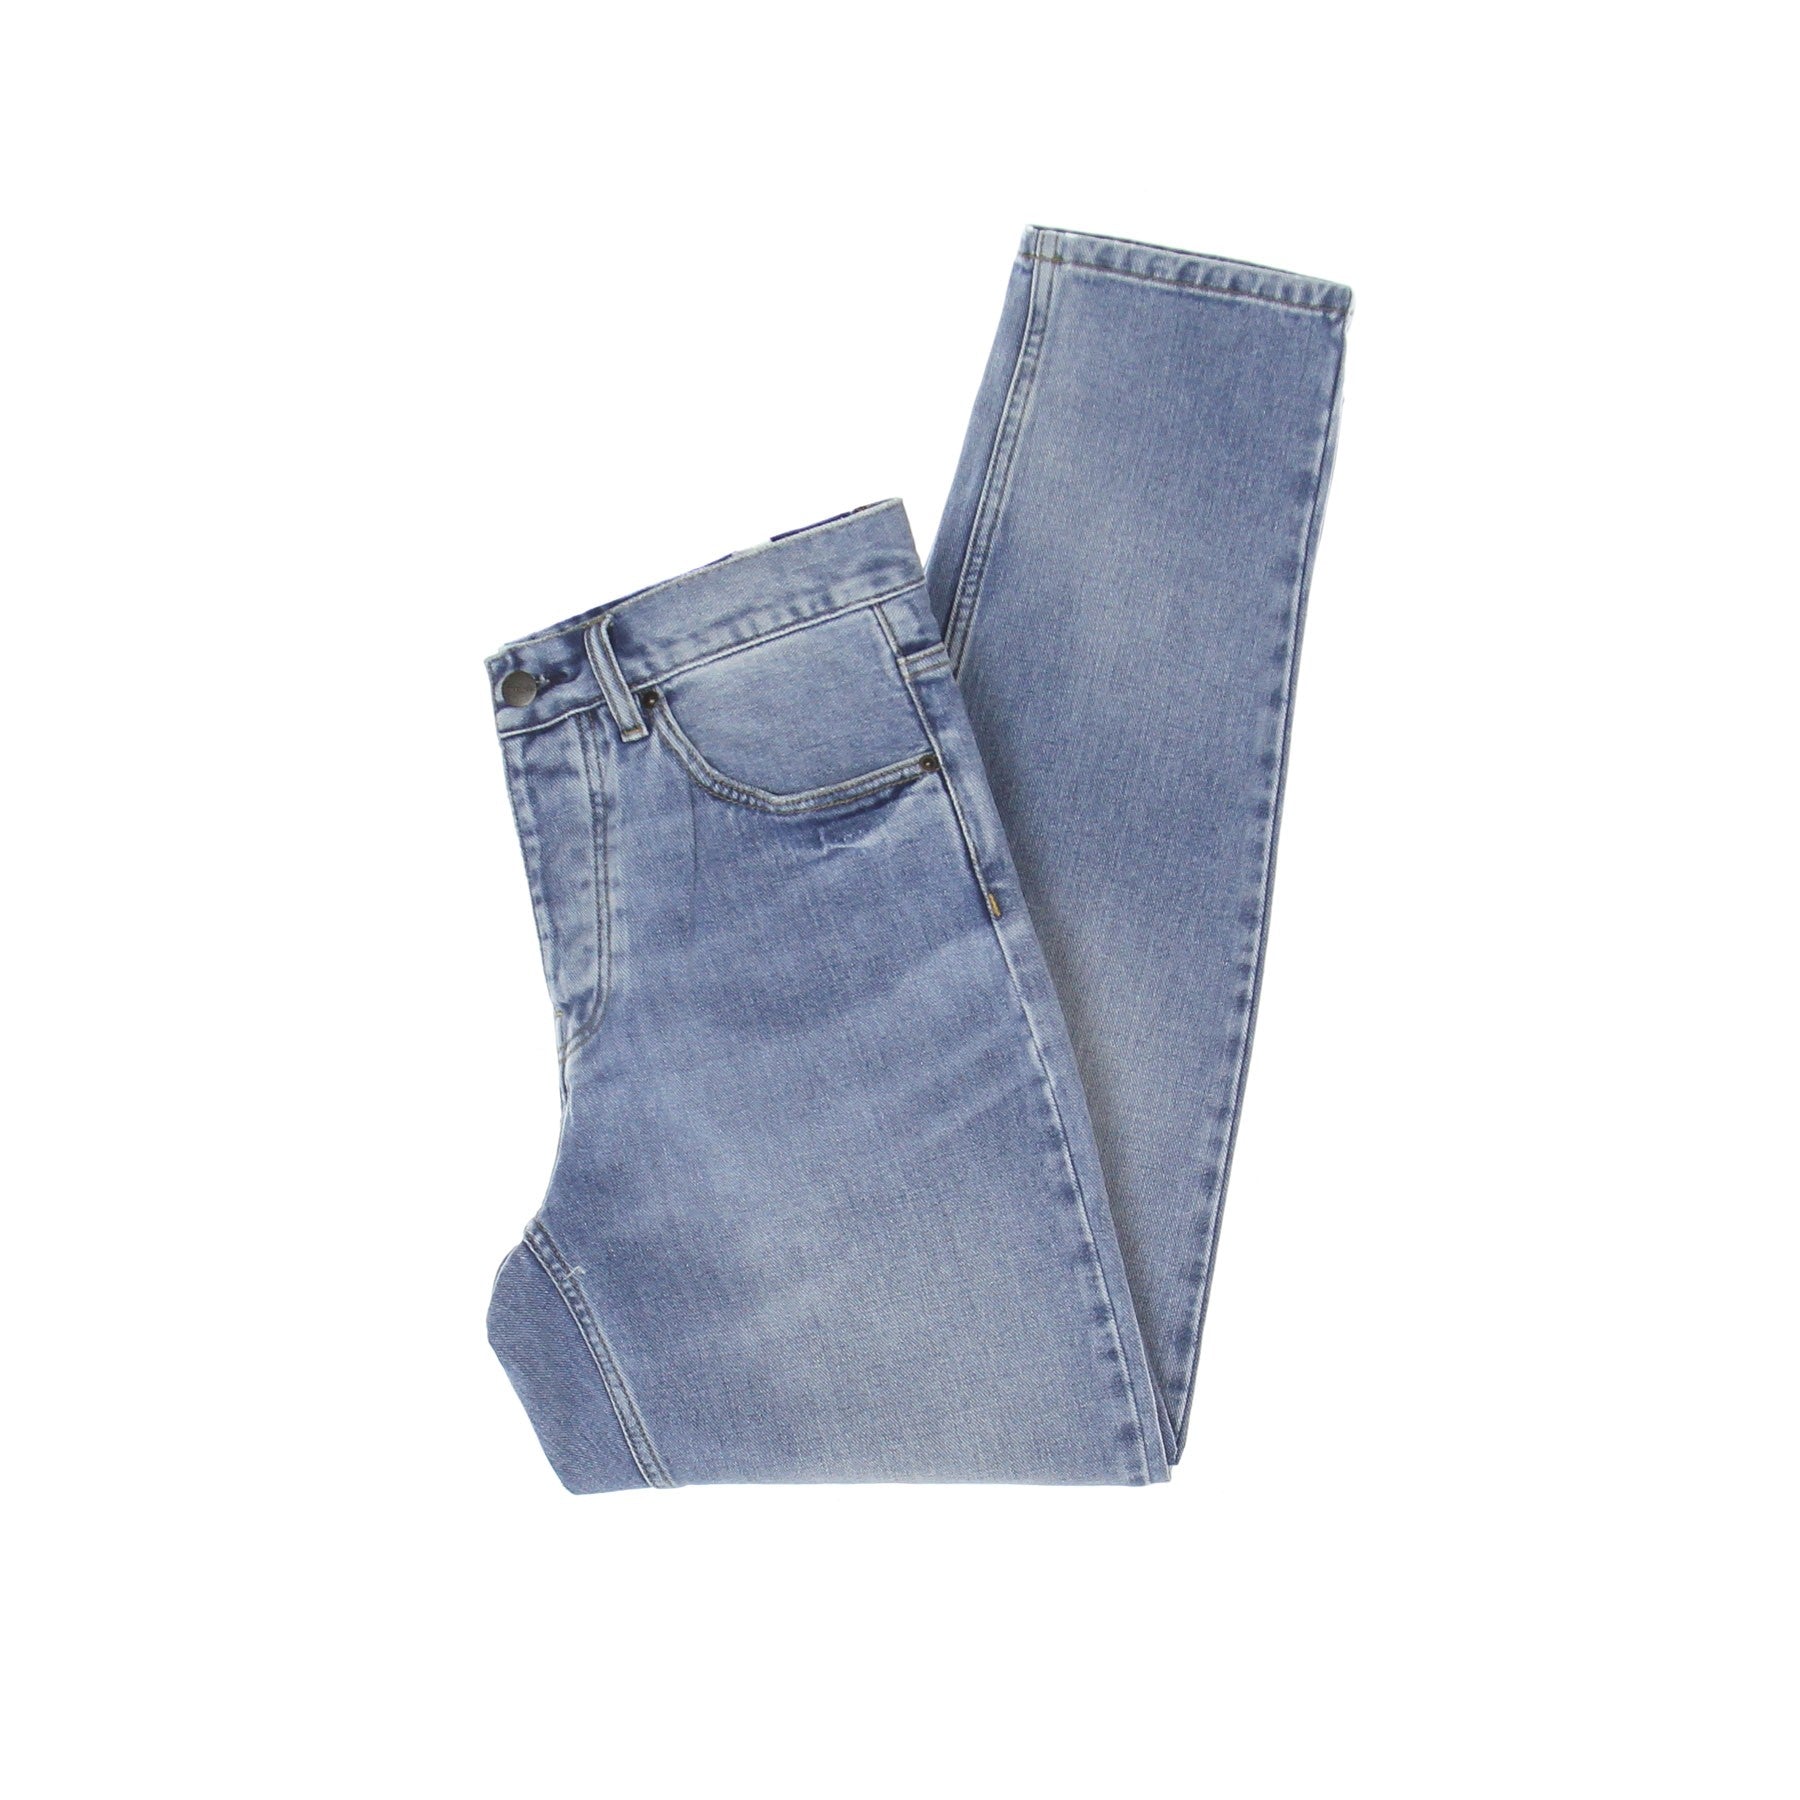 Jeans Uomo Newel Pant Blue Light Used Wash I029208